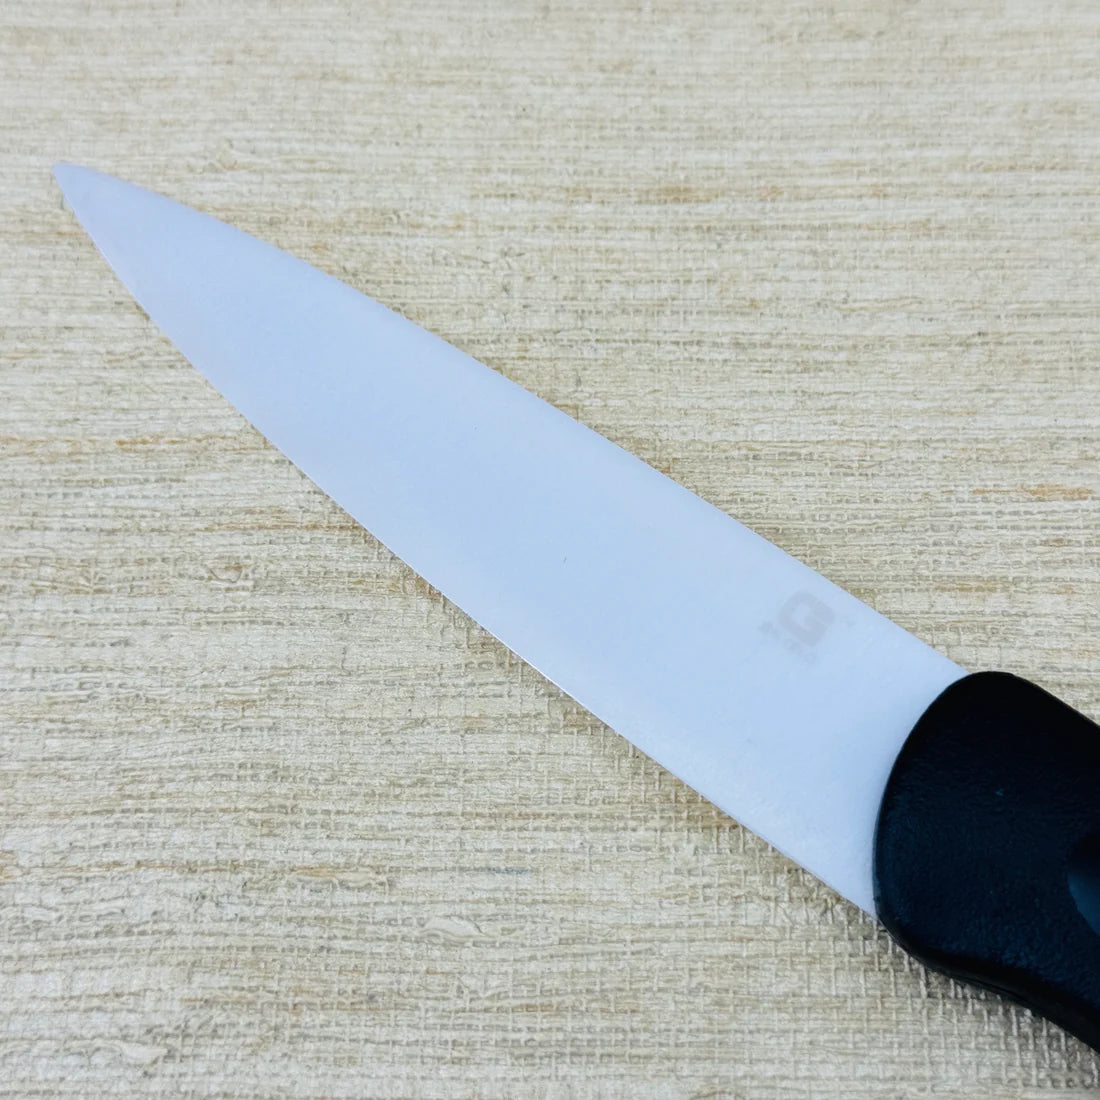 Gelo Ceramic Power Sharp Knife | KC125